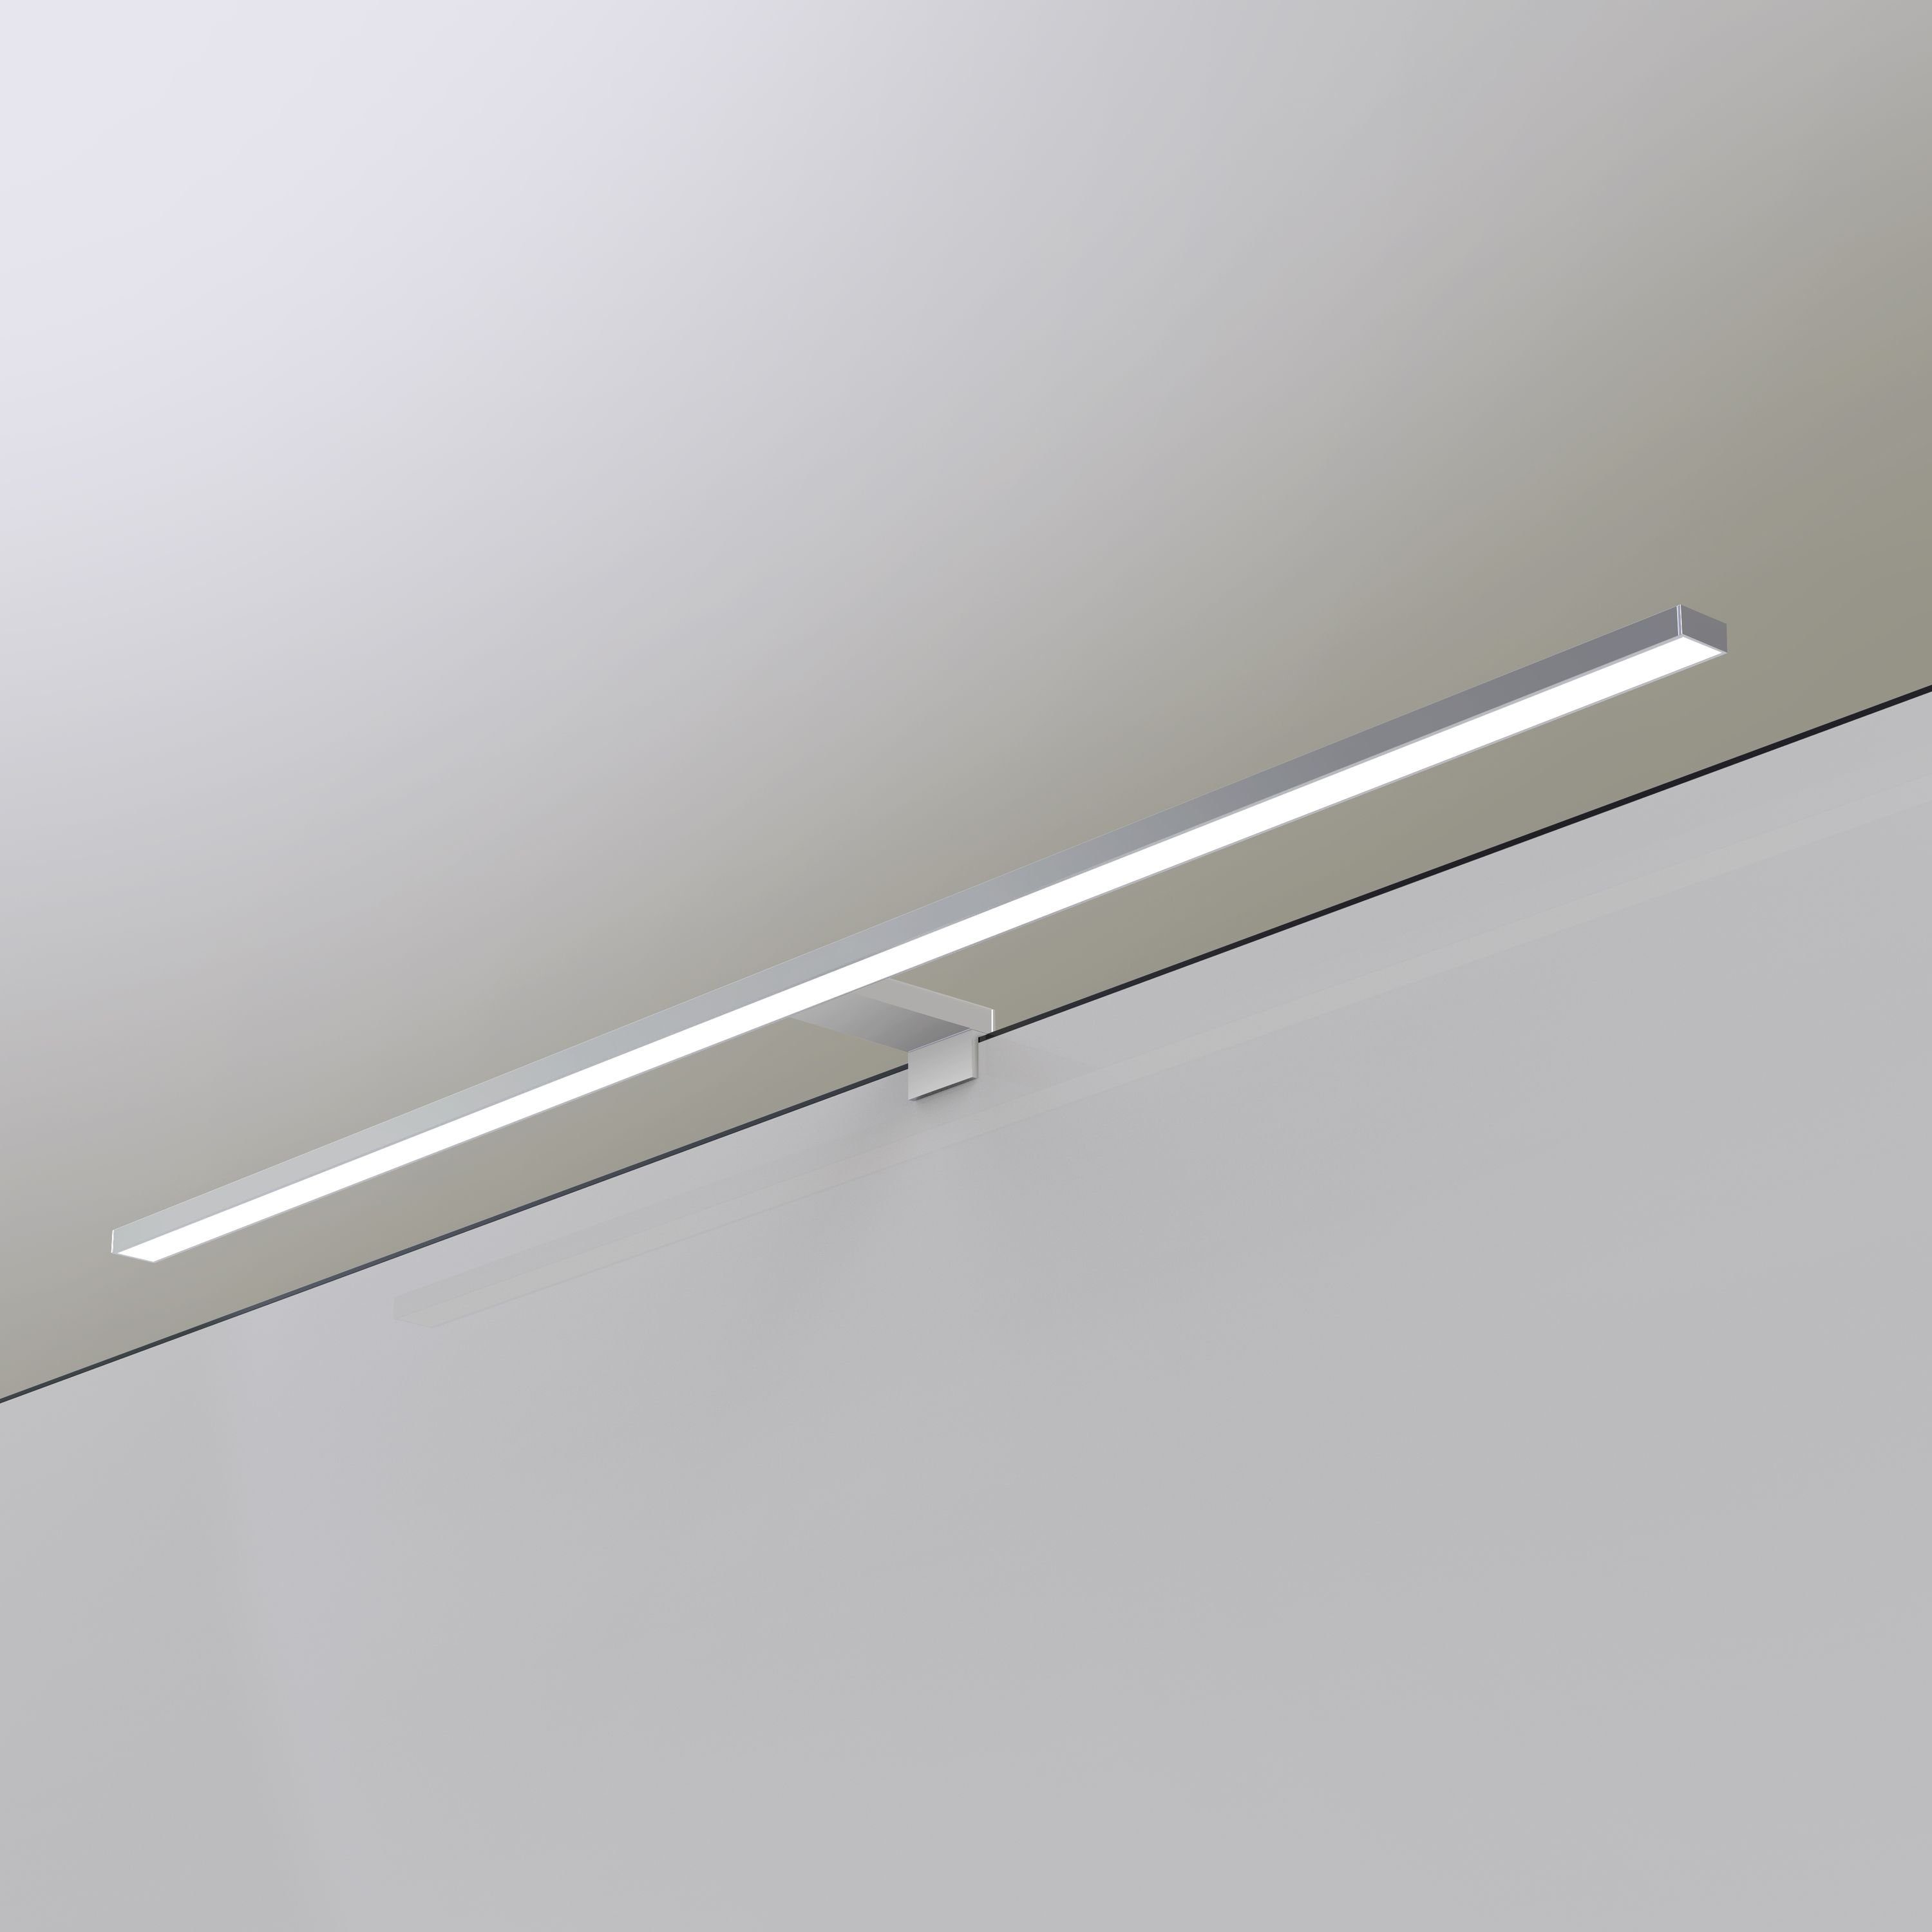 Spiegellampe Badlampe warmweiß 230V, silbergrau, 100cm kalb LED Badleuchte Spiegelleuchte